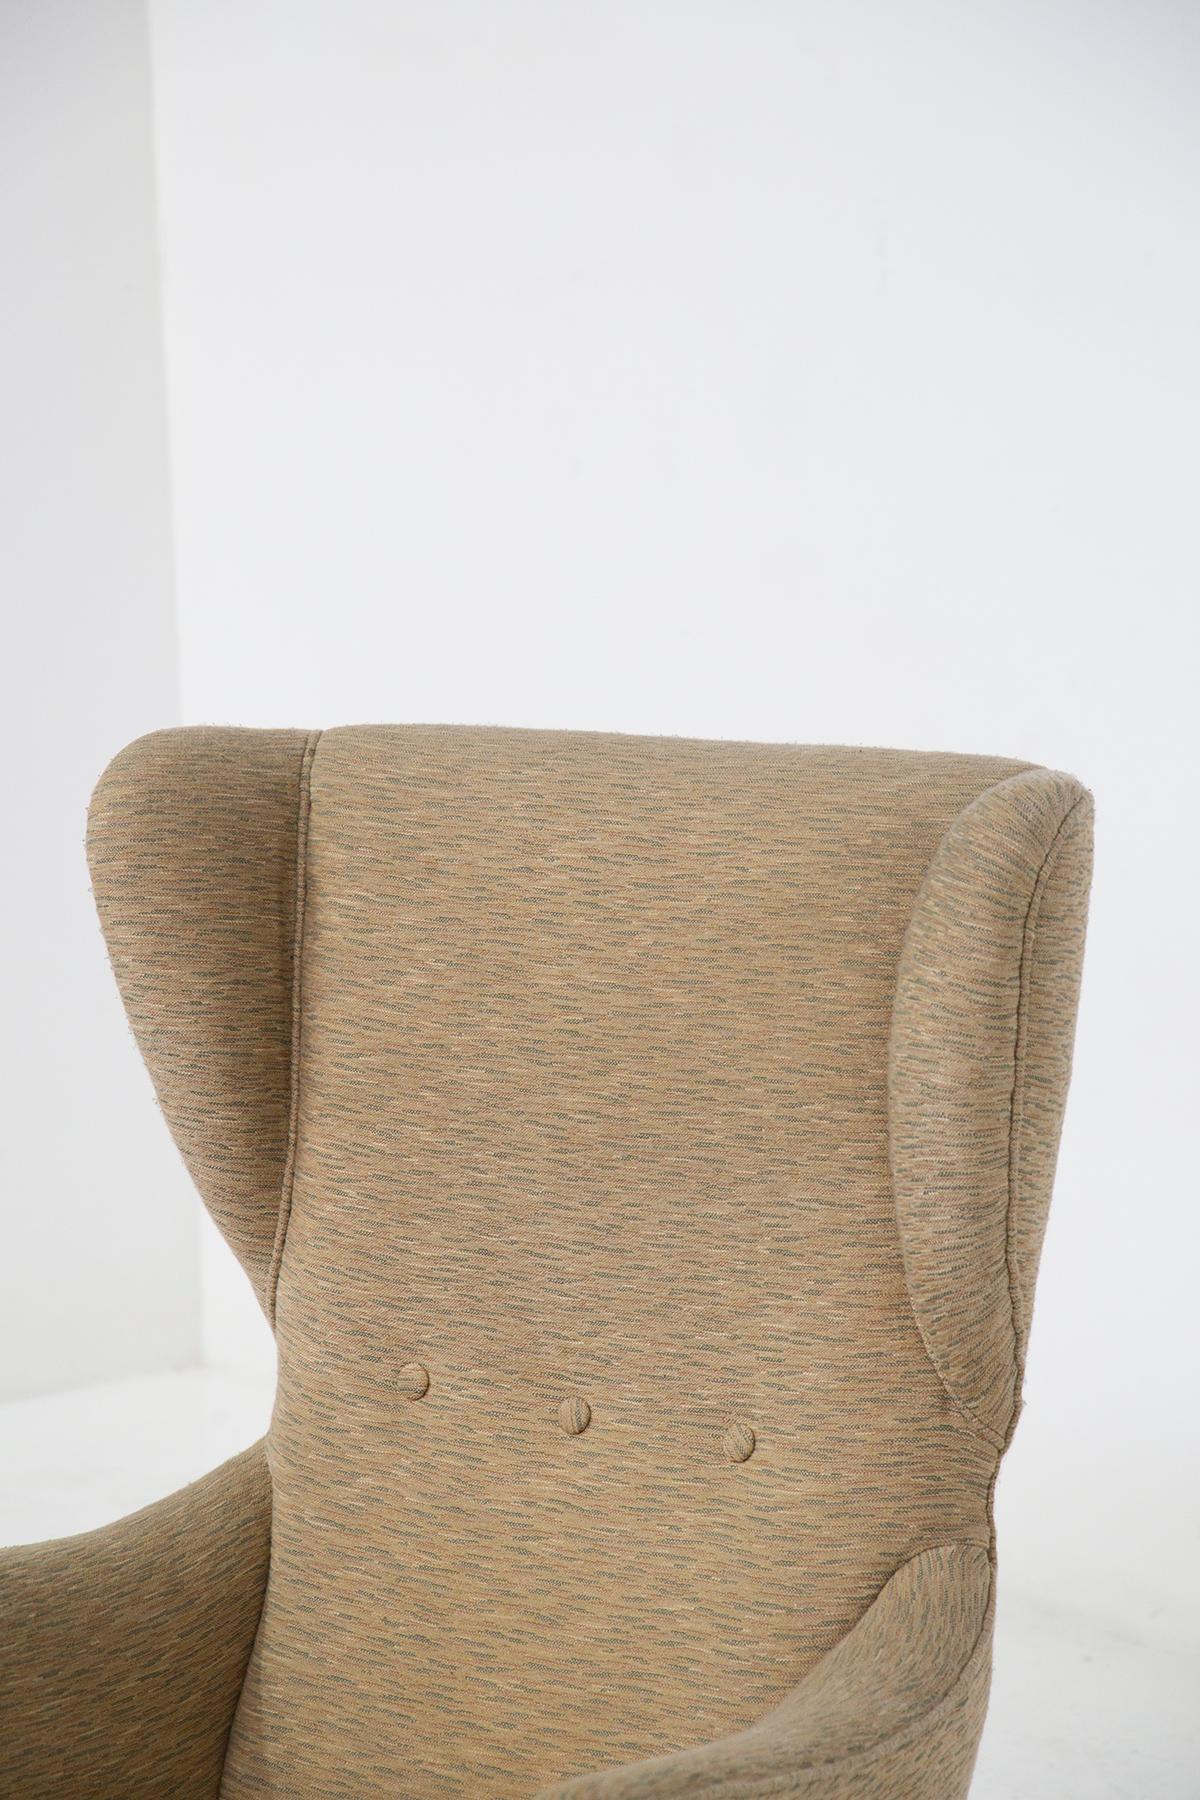 Prächtige Sessel, die dem großen Meister Paolo Buffa zugeschrieben werden, aus italienischer Produktion, völlig original.
Die Sessel haben ein starkes und schönes Holzgestell; die Füße sind Verstrebungen genau im Stil der Buffa.
Der Sitz ist aus